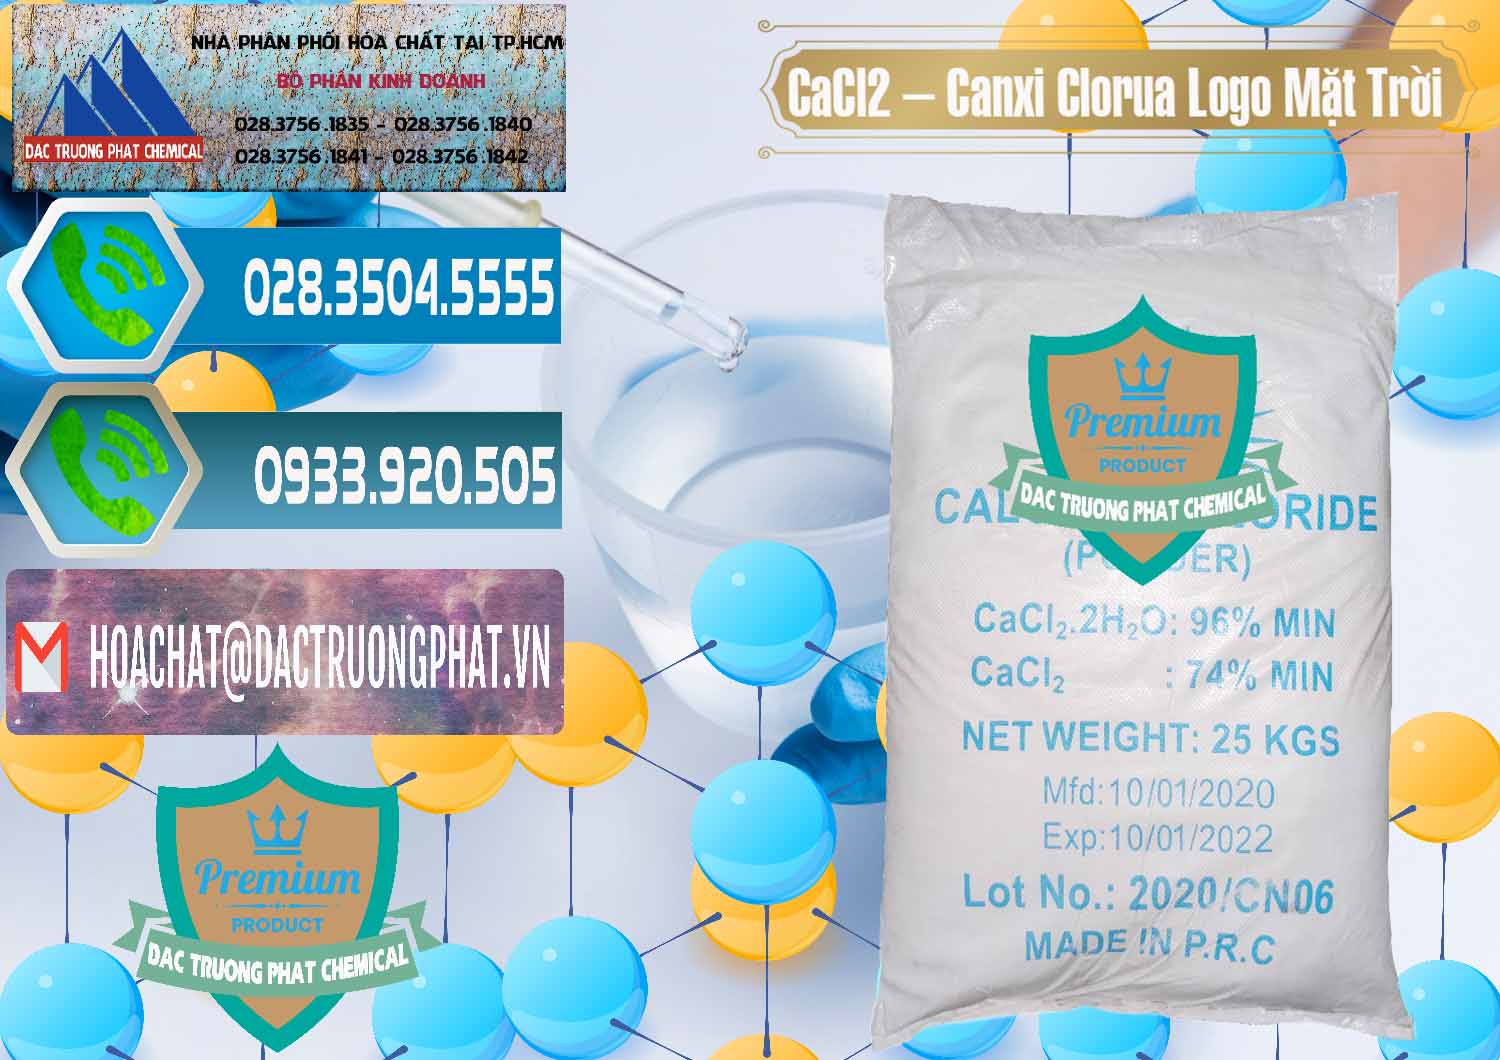 Nơi nhập khẩu - bán CaCl2 – Canxi Clorua 96% Logo Mặt Trời Trung Quốc China - 0041 - Nơi nhập khẩu và cung cấp hóa chất tại TP.HCM - congtyhoachat.net